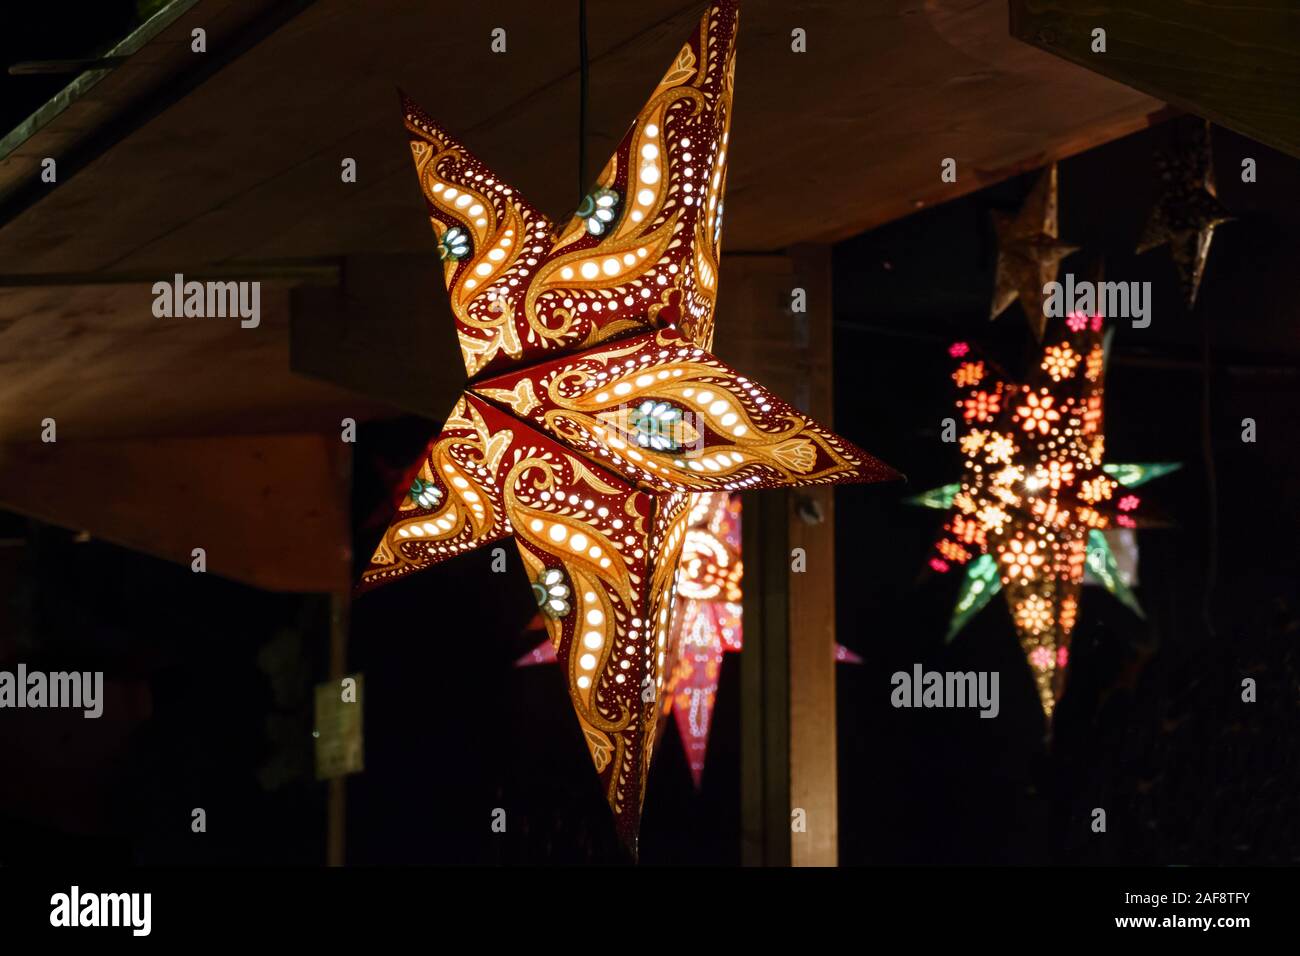 beleuchtete Sterne in bunten Farben auf dem Weihnachtsmarkt Stock Photo